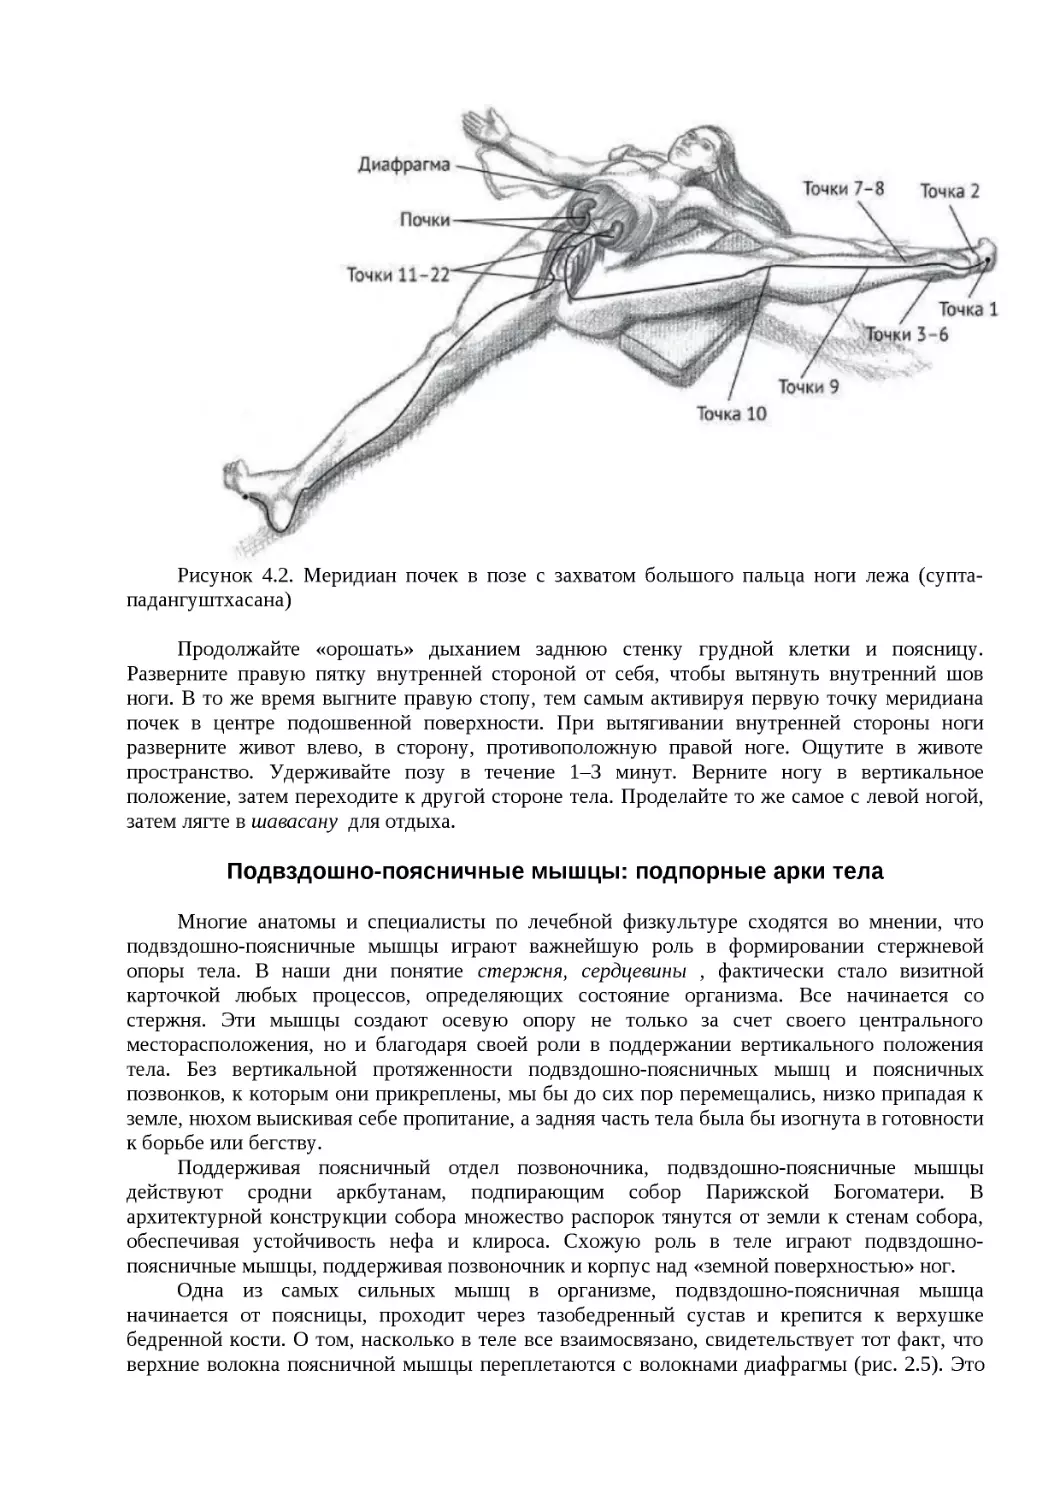 ﻿Подвздошно-поясничные мышцы: подпорные арки тел